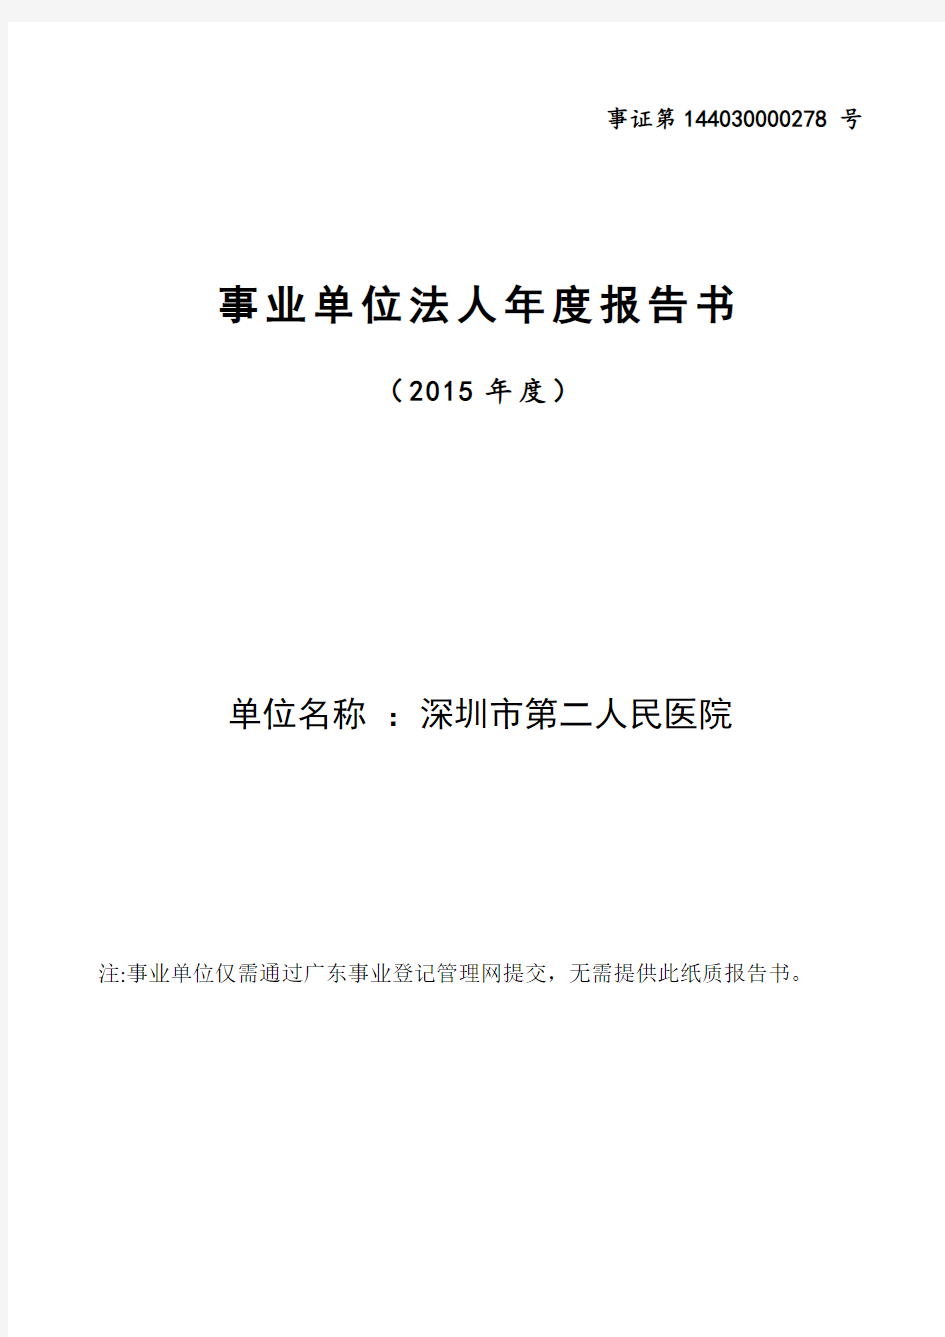 2015年度事业单位法人年度报告书-深圳市第二人民医院